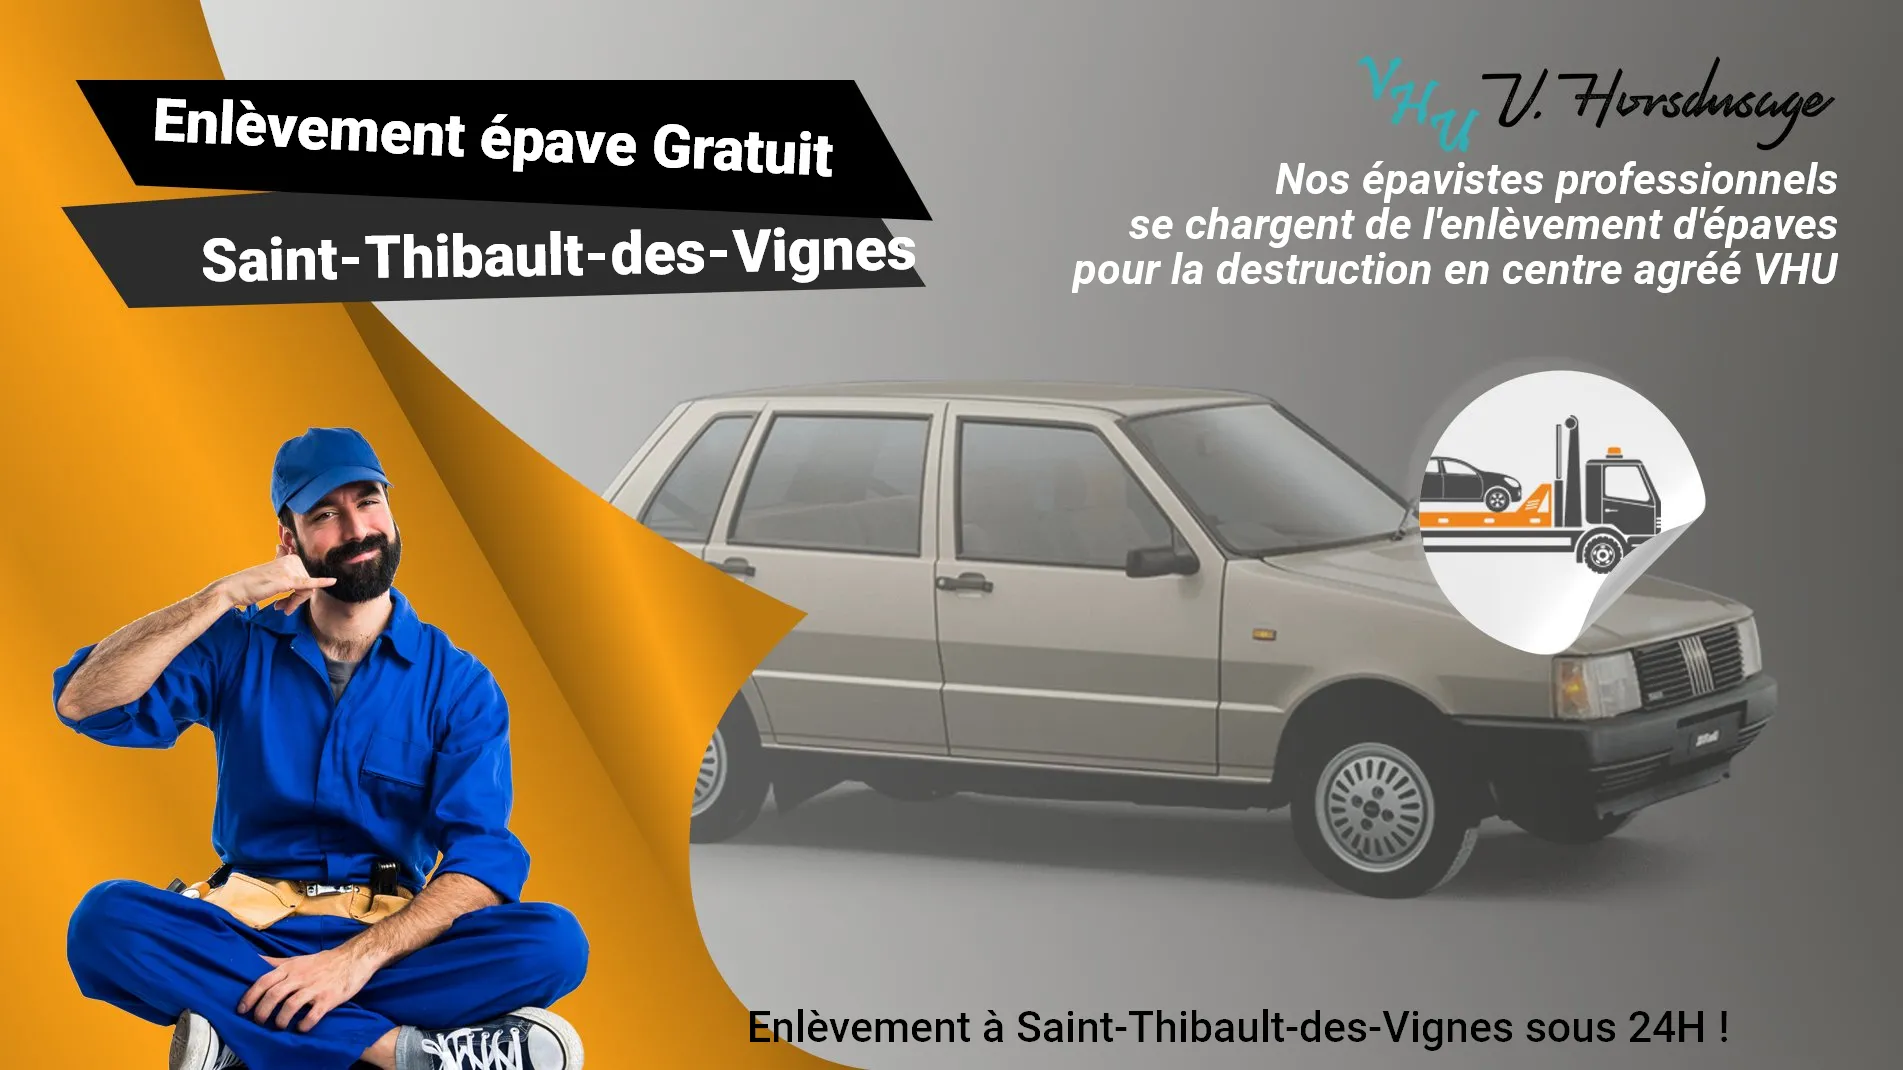 Pour un enlèvement gratuit à Saint-Thibault-des-Vignes, contactez nos épavistes agréé VHU